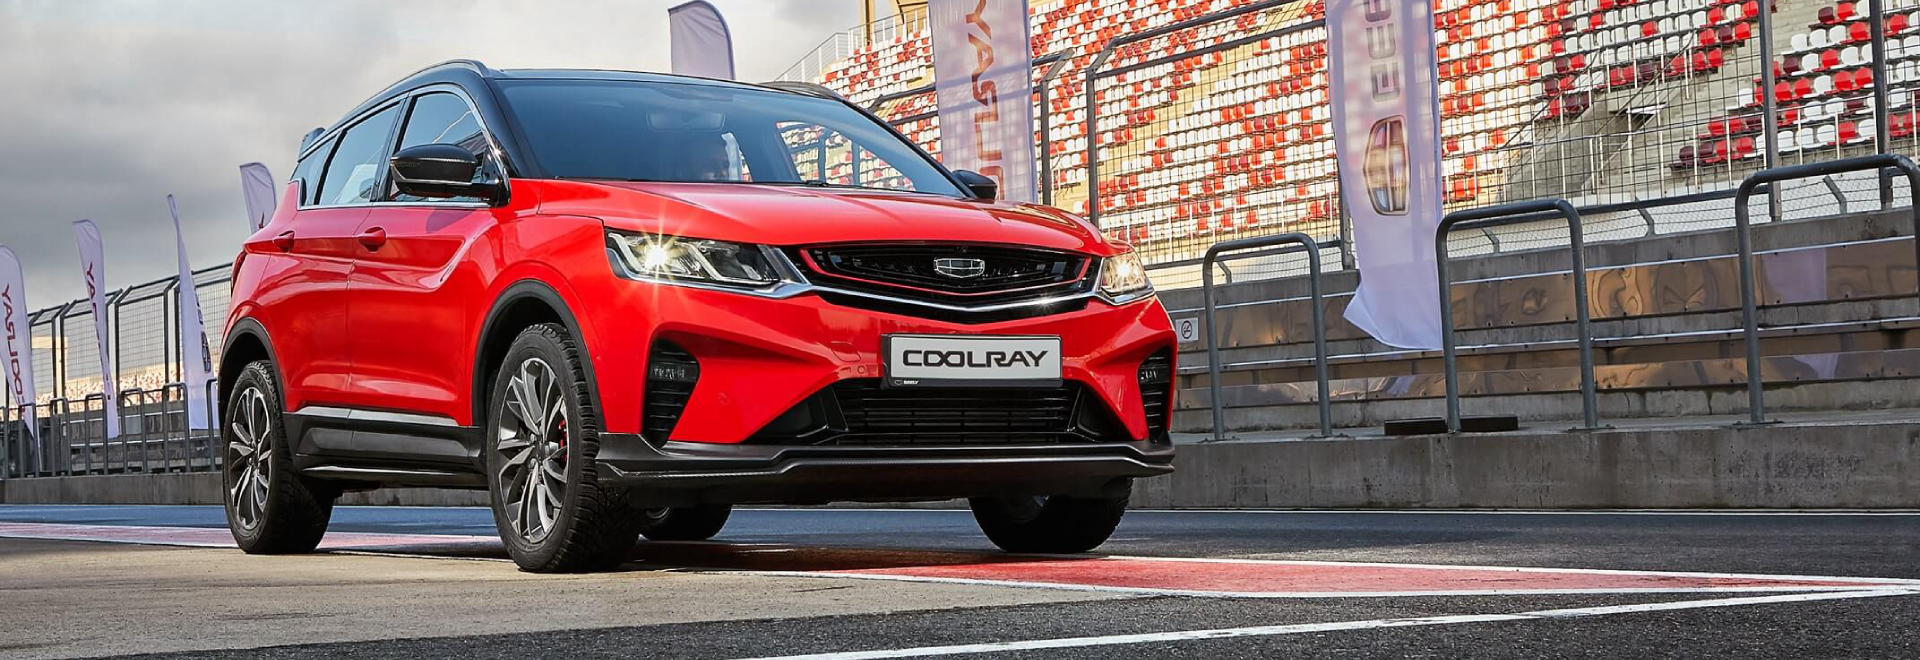 Geely Coolray Car и отзывы автовладельцев о компактном кроссовере Geely Coolray 2020 года